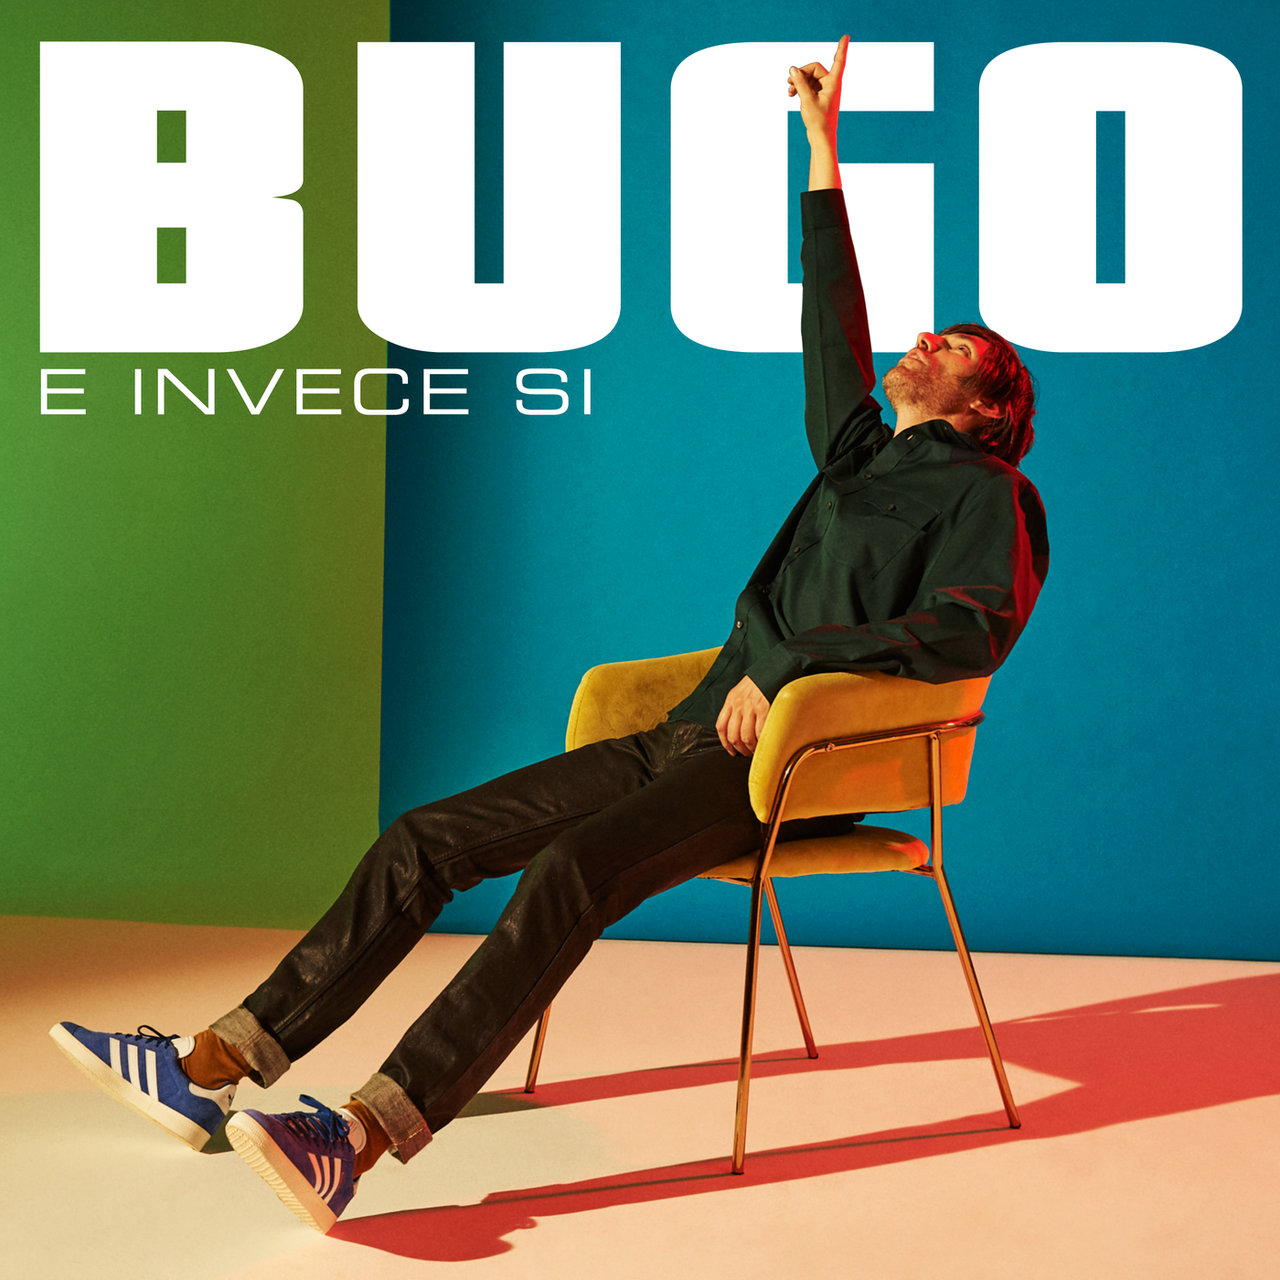 Bugo — E invece sì cover artwork